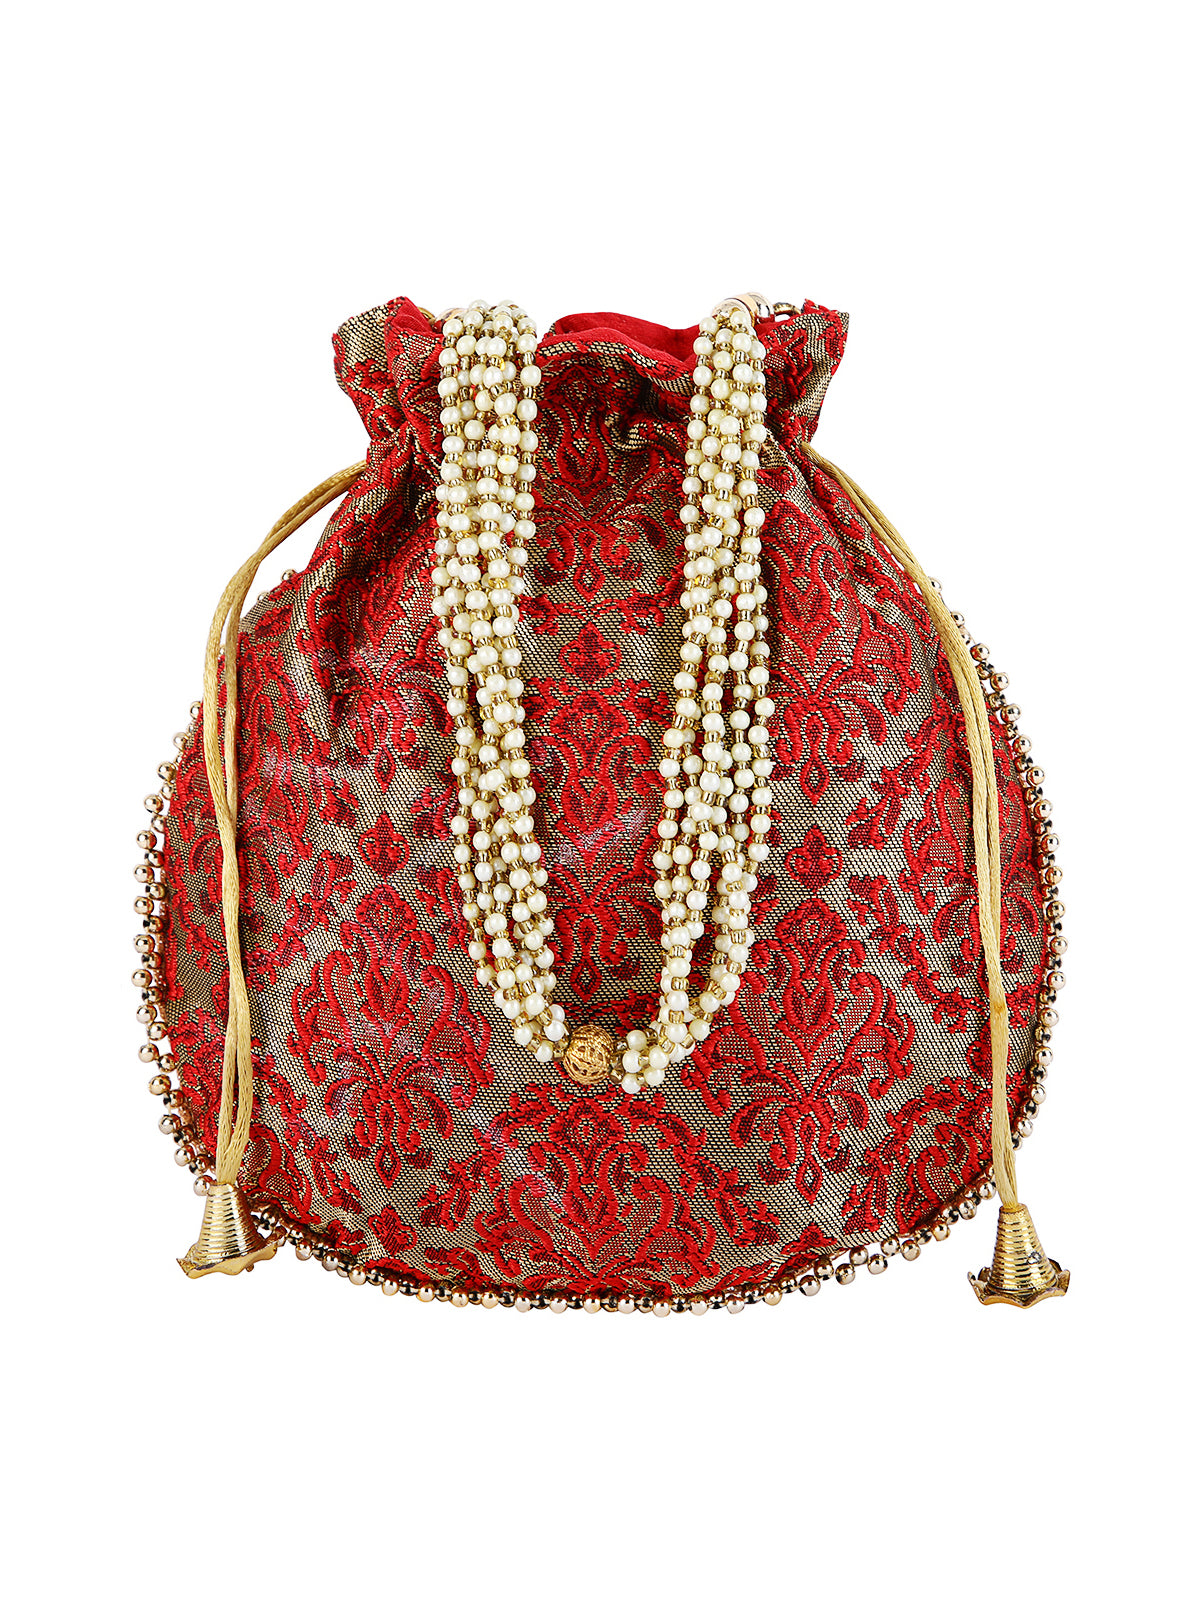 Maroon & Gold Damask Embellished Silk Designer Potli Bag / Hand Bag